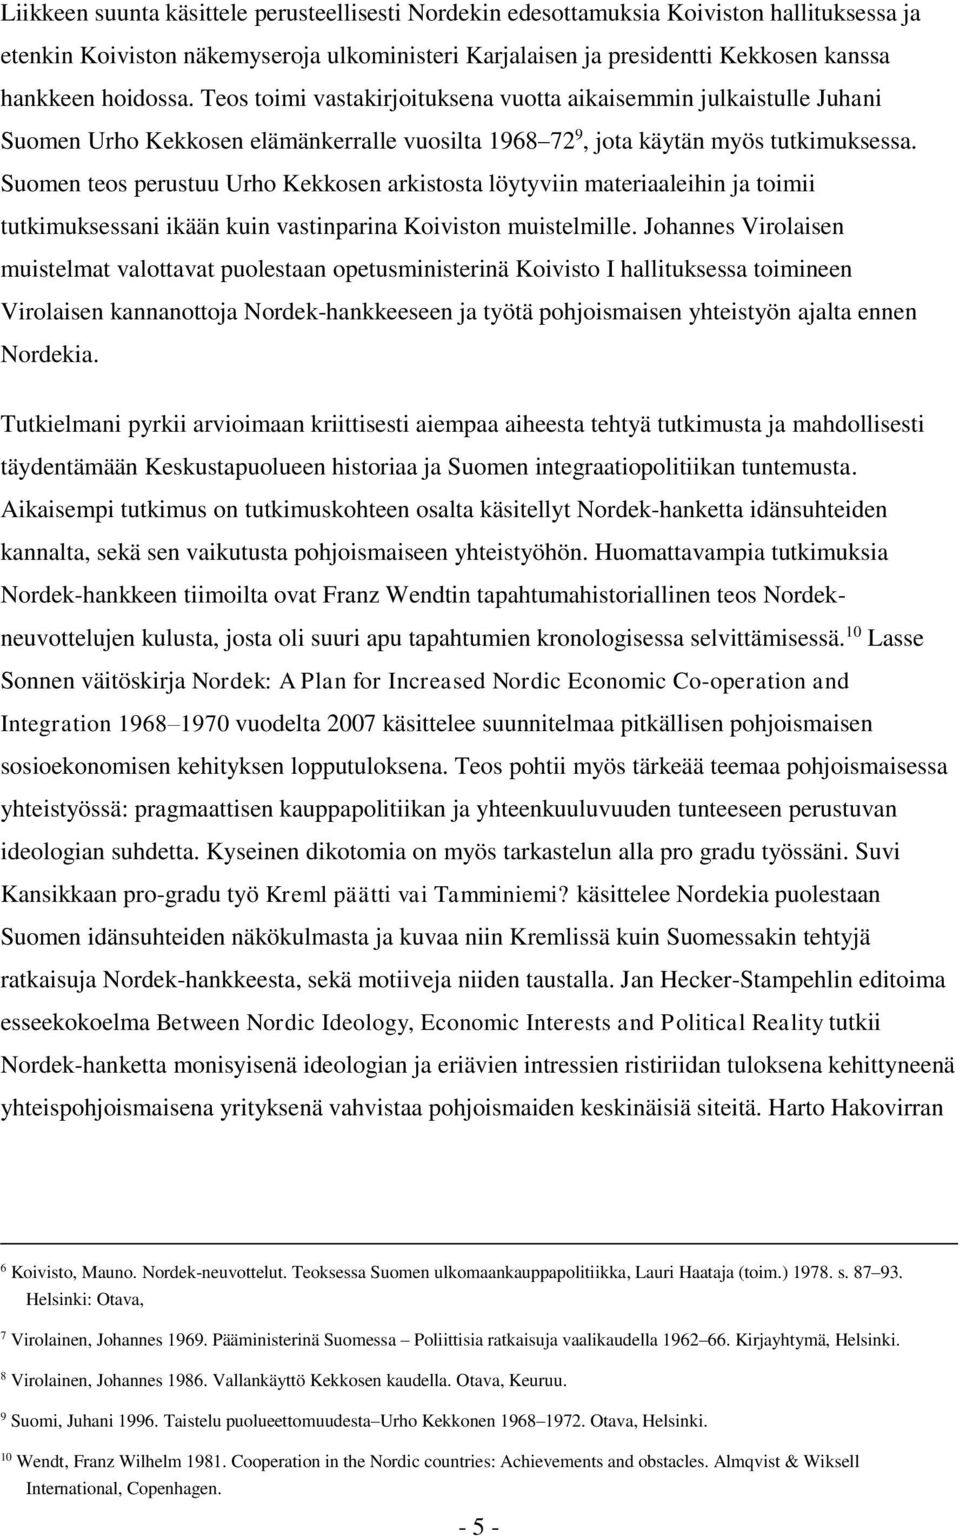 Suomen teos perustuu Urho Kekkosen arkistosta löytyviin materiaaleihin ja toimii tutkimuksessani ikään kuin vastinparina Koiviston muistelmille.